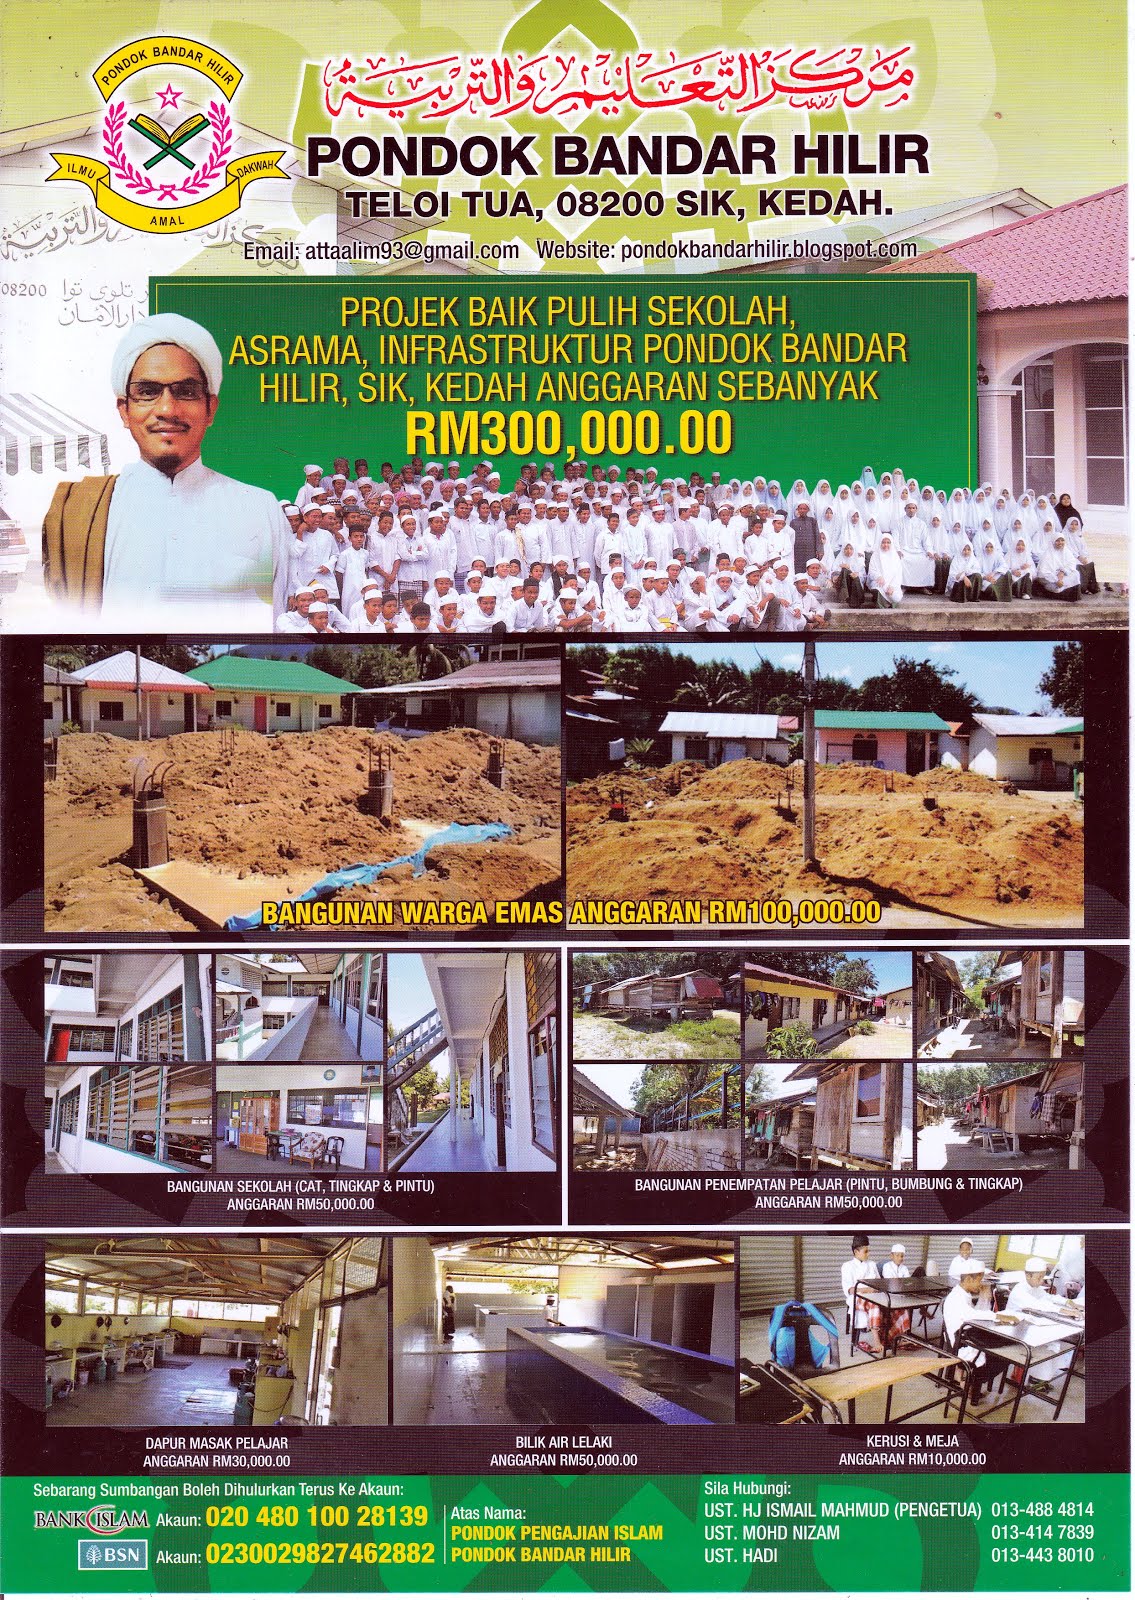 Tel Yayasan Pondok Malaysia